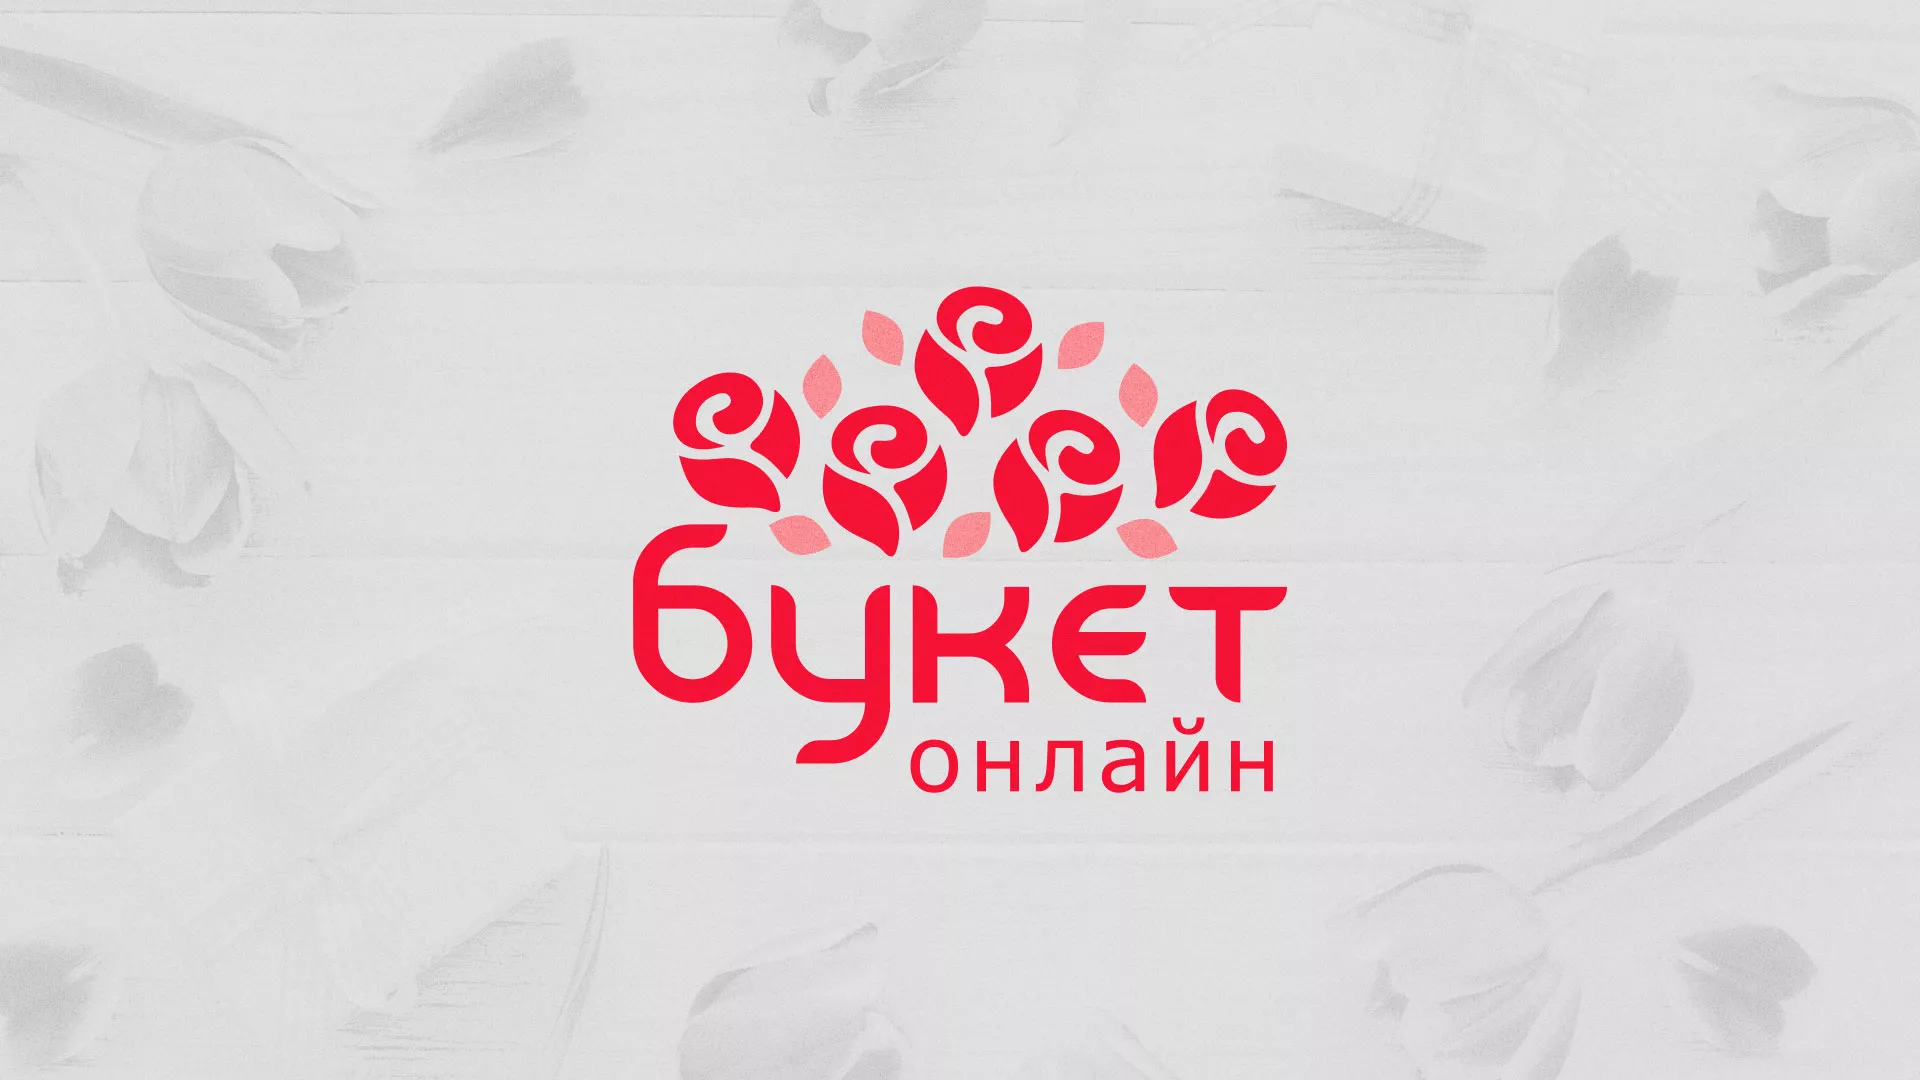 Создание интернет-магазина «Букет-онлайн» по цветам в Вышнем Волочке